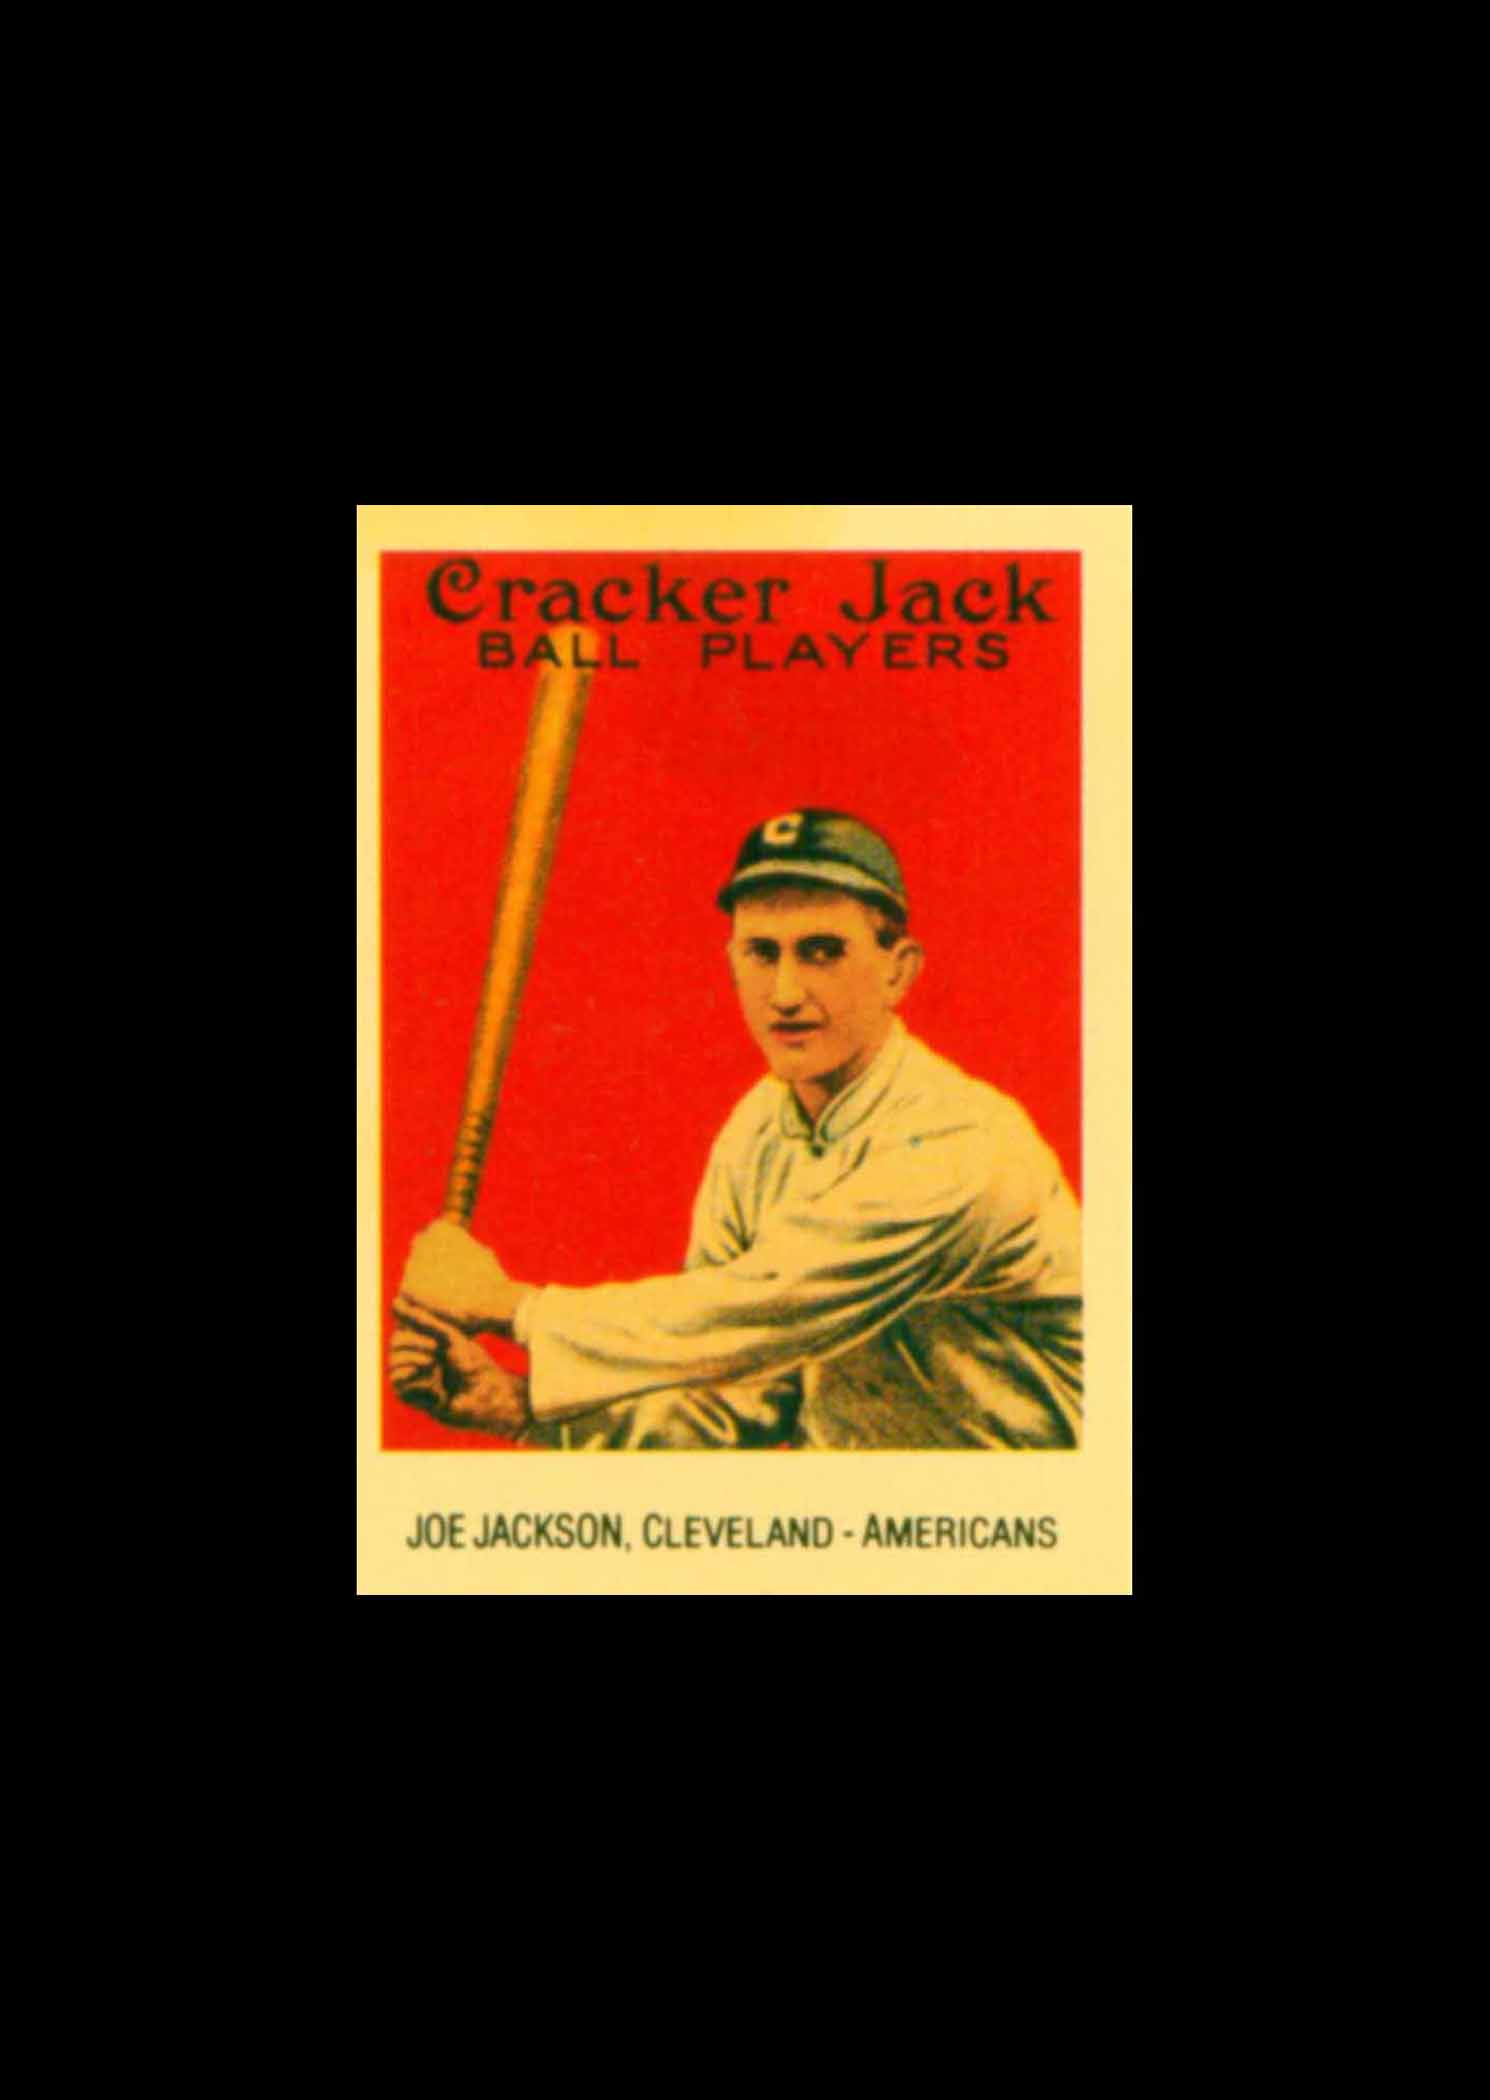 1993 Cracker Jack 1915 Reprints